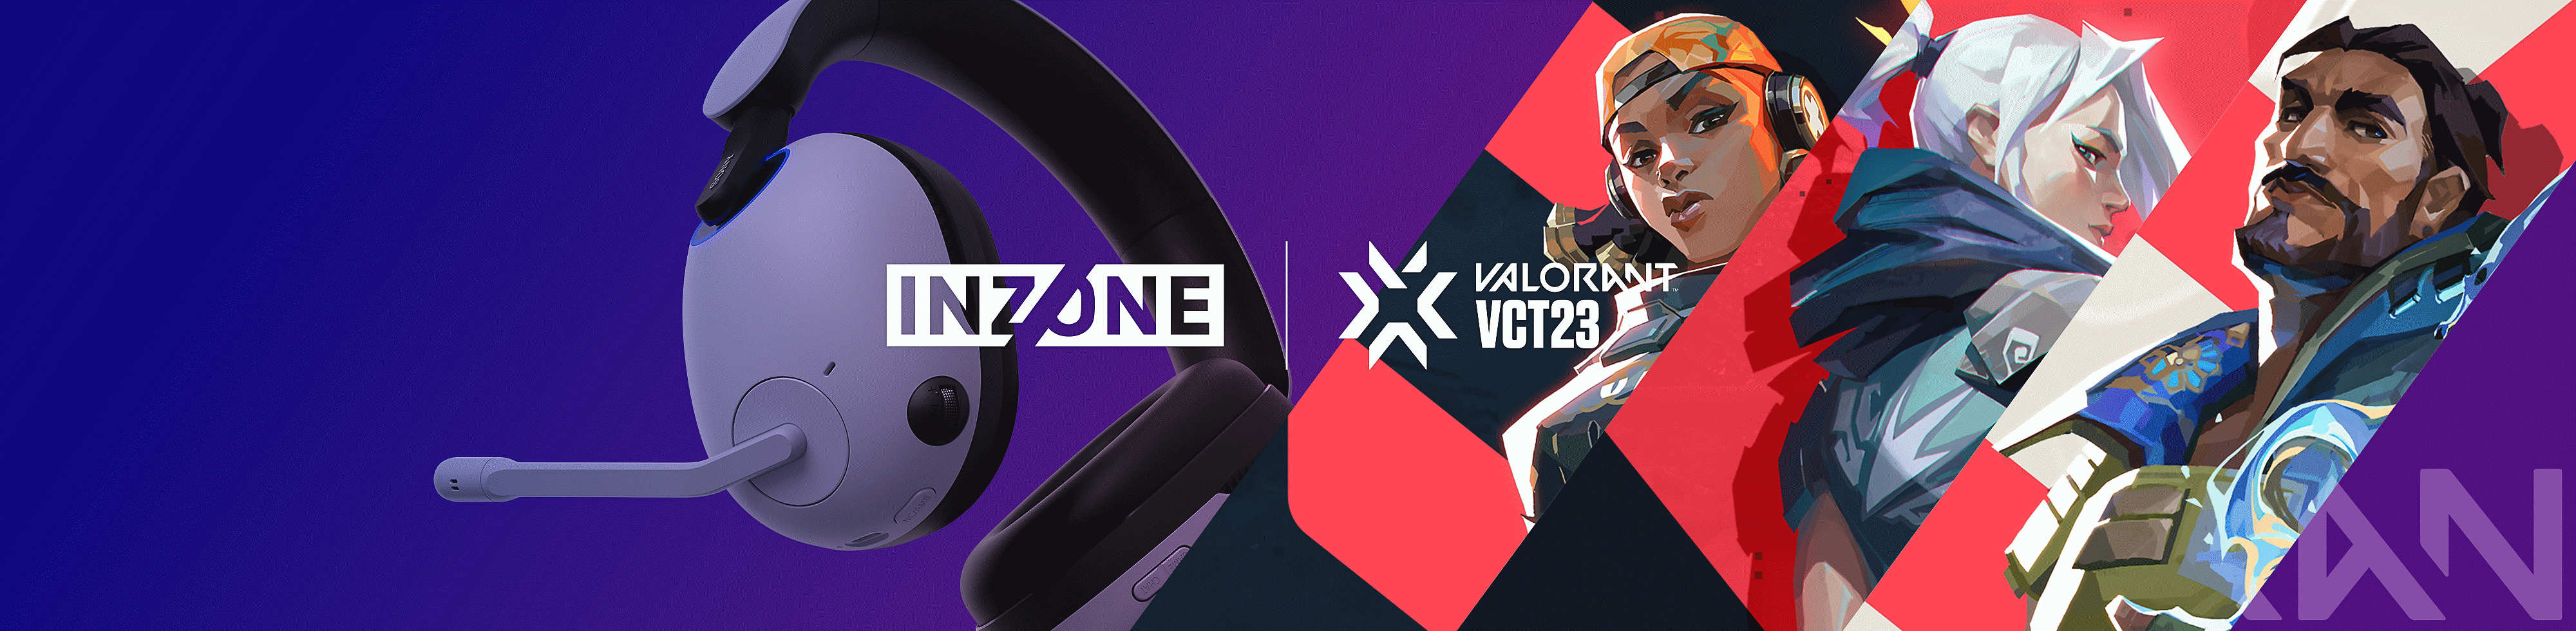 VALORANT karakterleriyle Sony INZONE H9 oyun kulaklığının ve INZONE ile VALORANT VCT23 logolarının görüntüsü